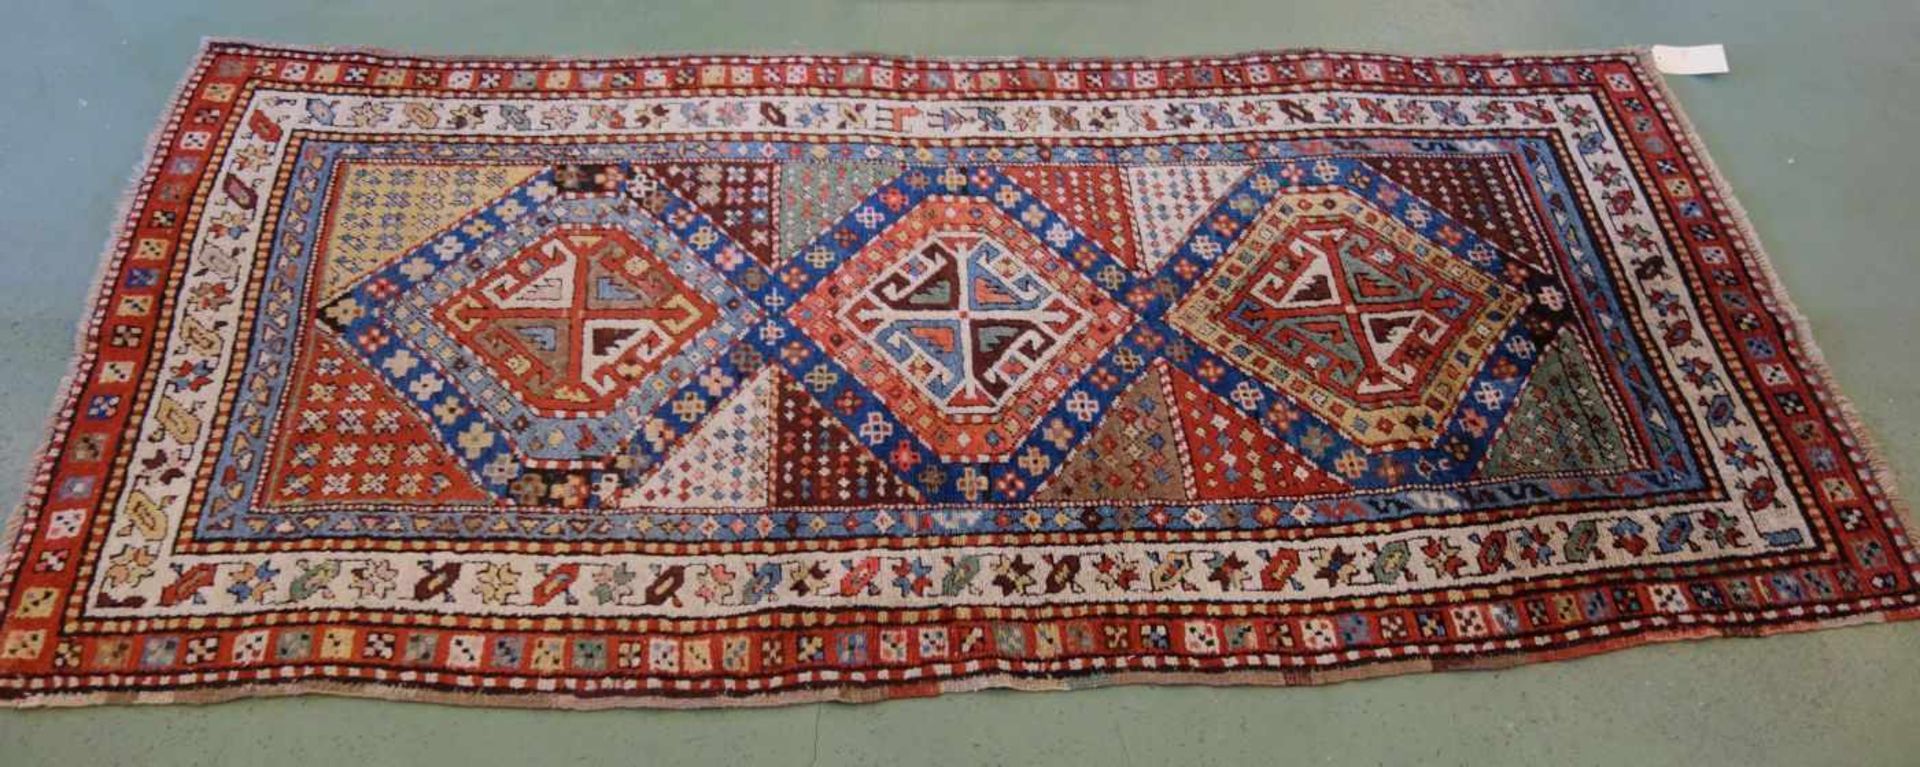 KAUKASISCHER MEDAILLONTEPPICH / carpet, wohl 19. Jh., Kaukasus / Schulaver-Kasak (Schulaver- - Image 2 of 13